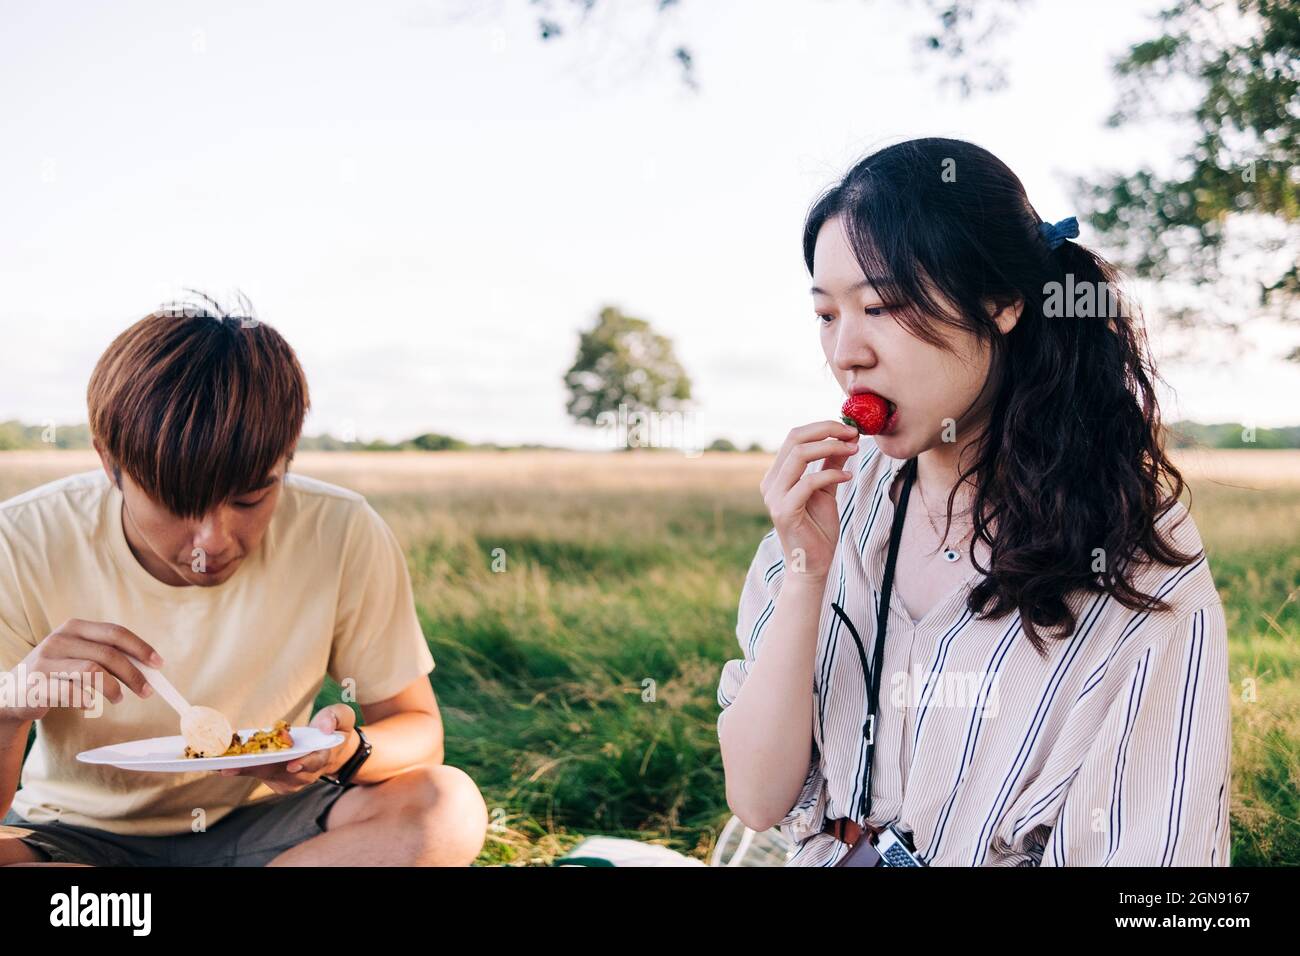 Frau, die während des Picknicks mit dem Mann im Park Erdbeere isst Stockfoto